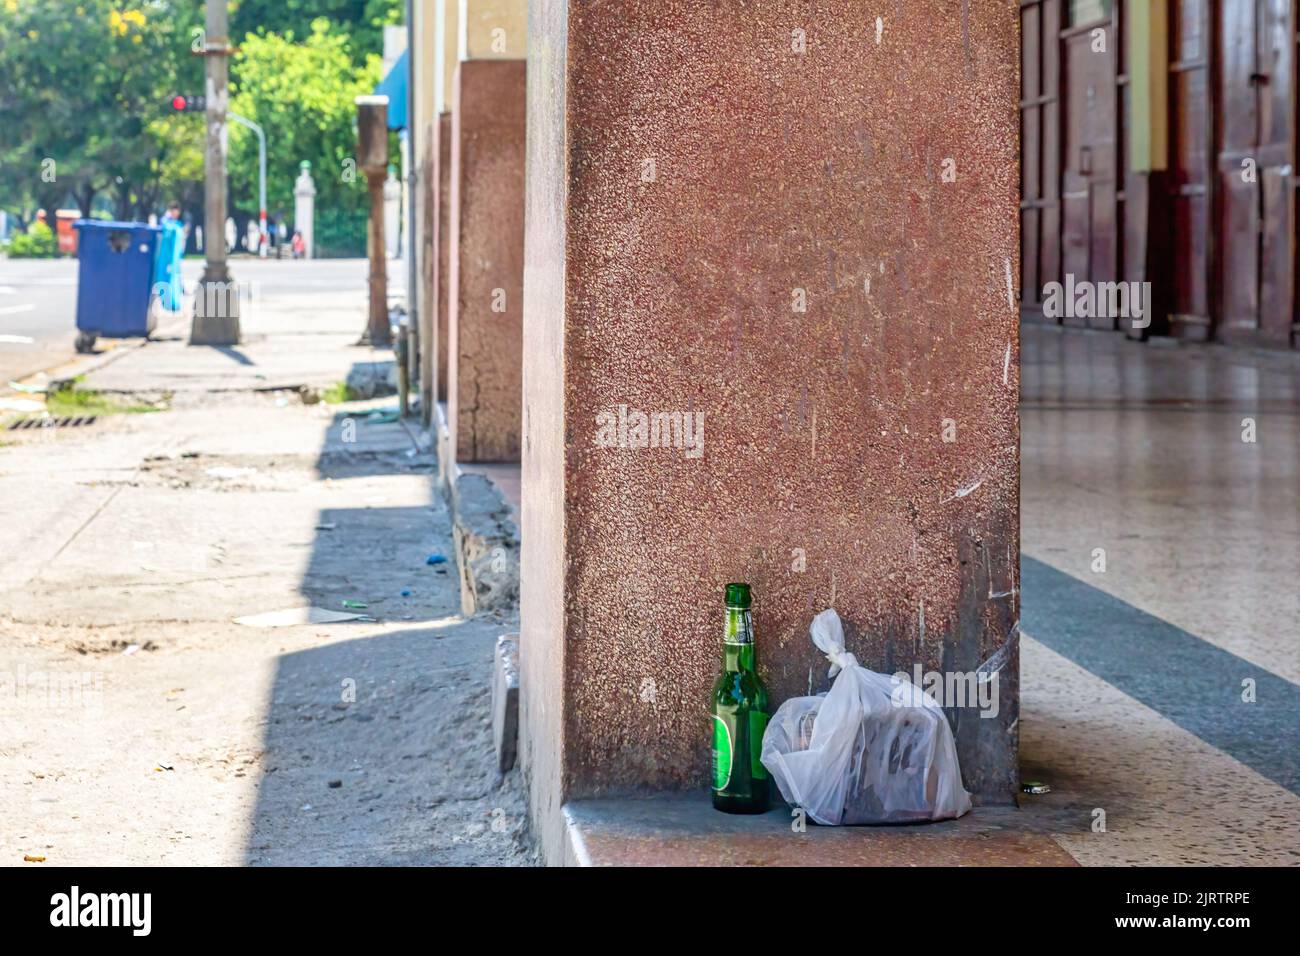 Un sacchetto di plastica con immondizia e una bottiglia di birra sono abbandonati nella costruzione portico. Nell'angolo, i grandi bidoni della spazzatura della città sono visti. Foto Stock